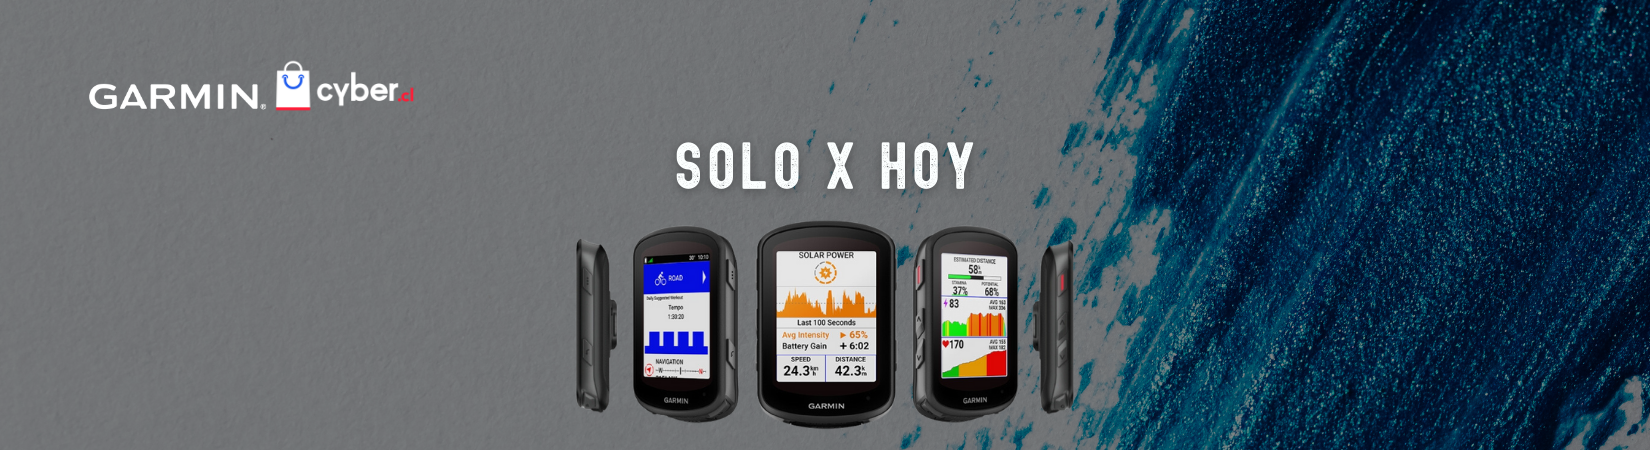 SOLO X HOY